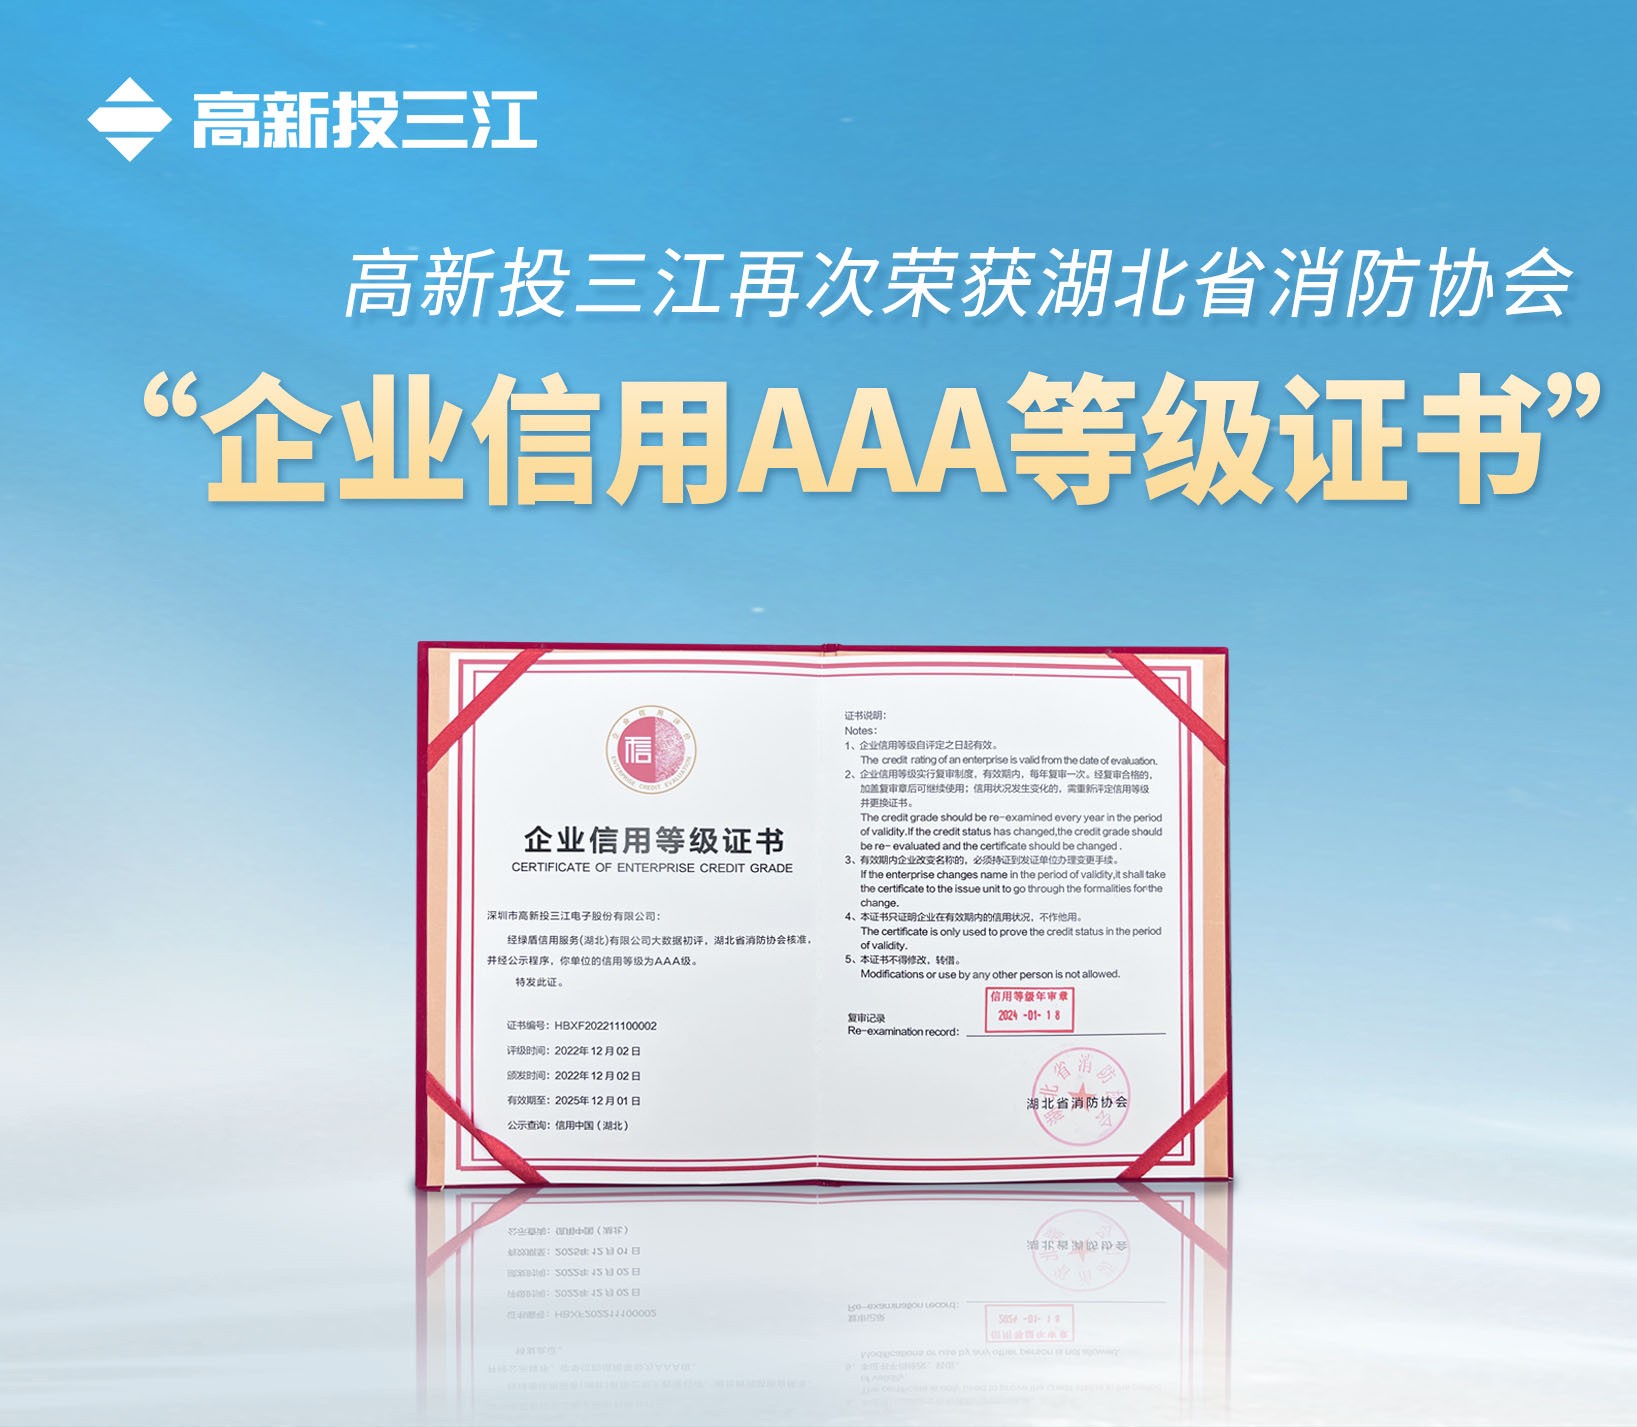 铁盘神算4778再次荣获湖北省消防协会 “企业信用AAA等级证书”